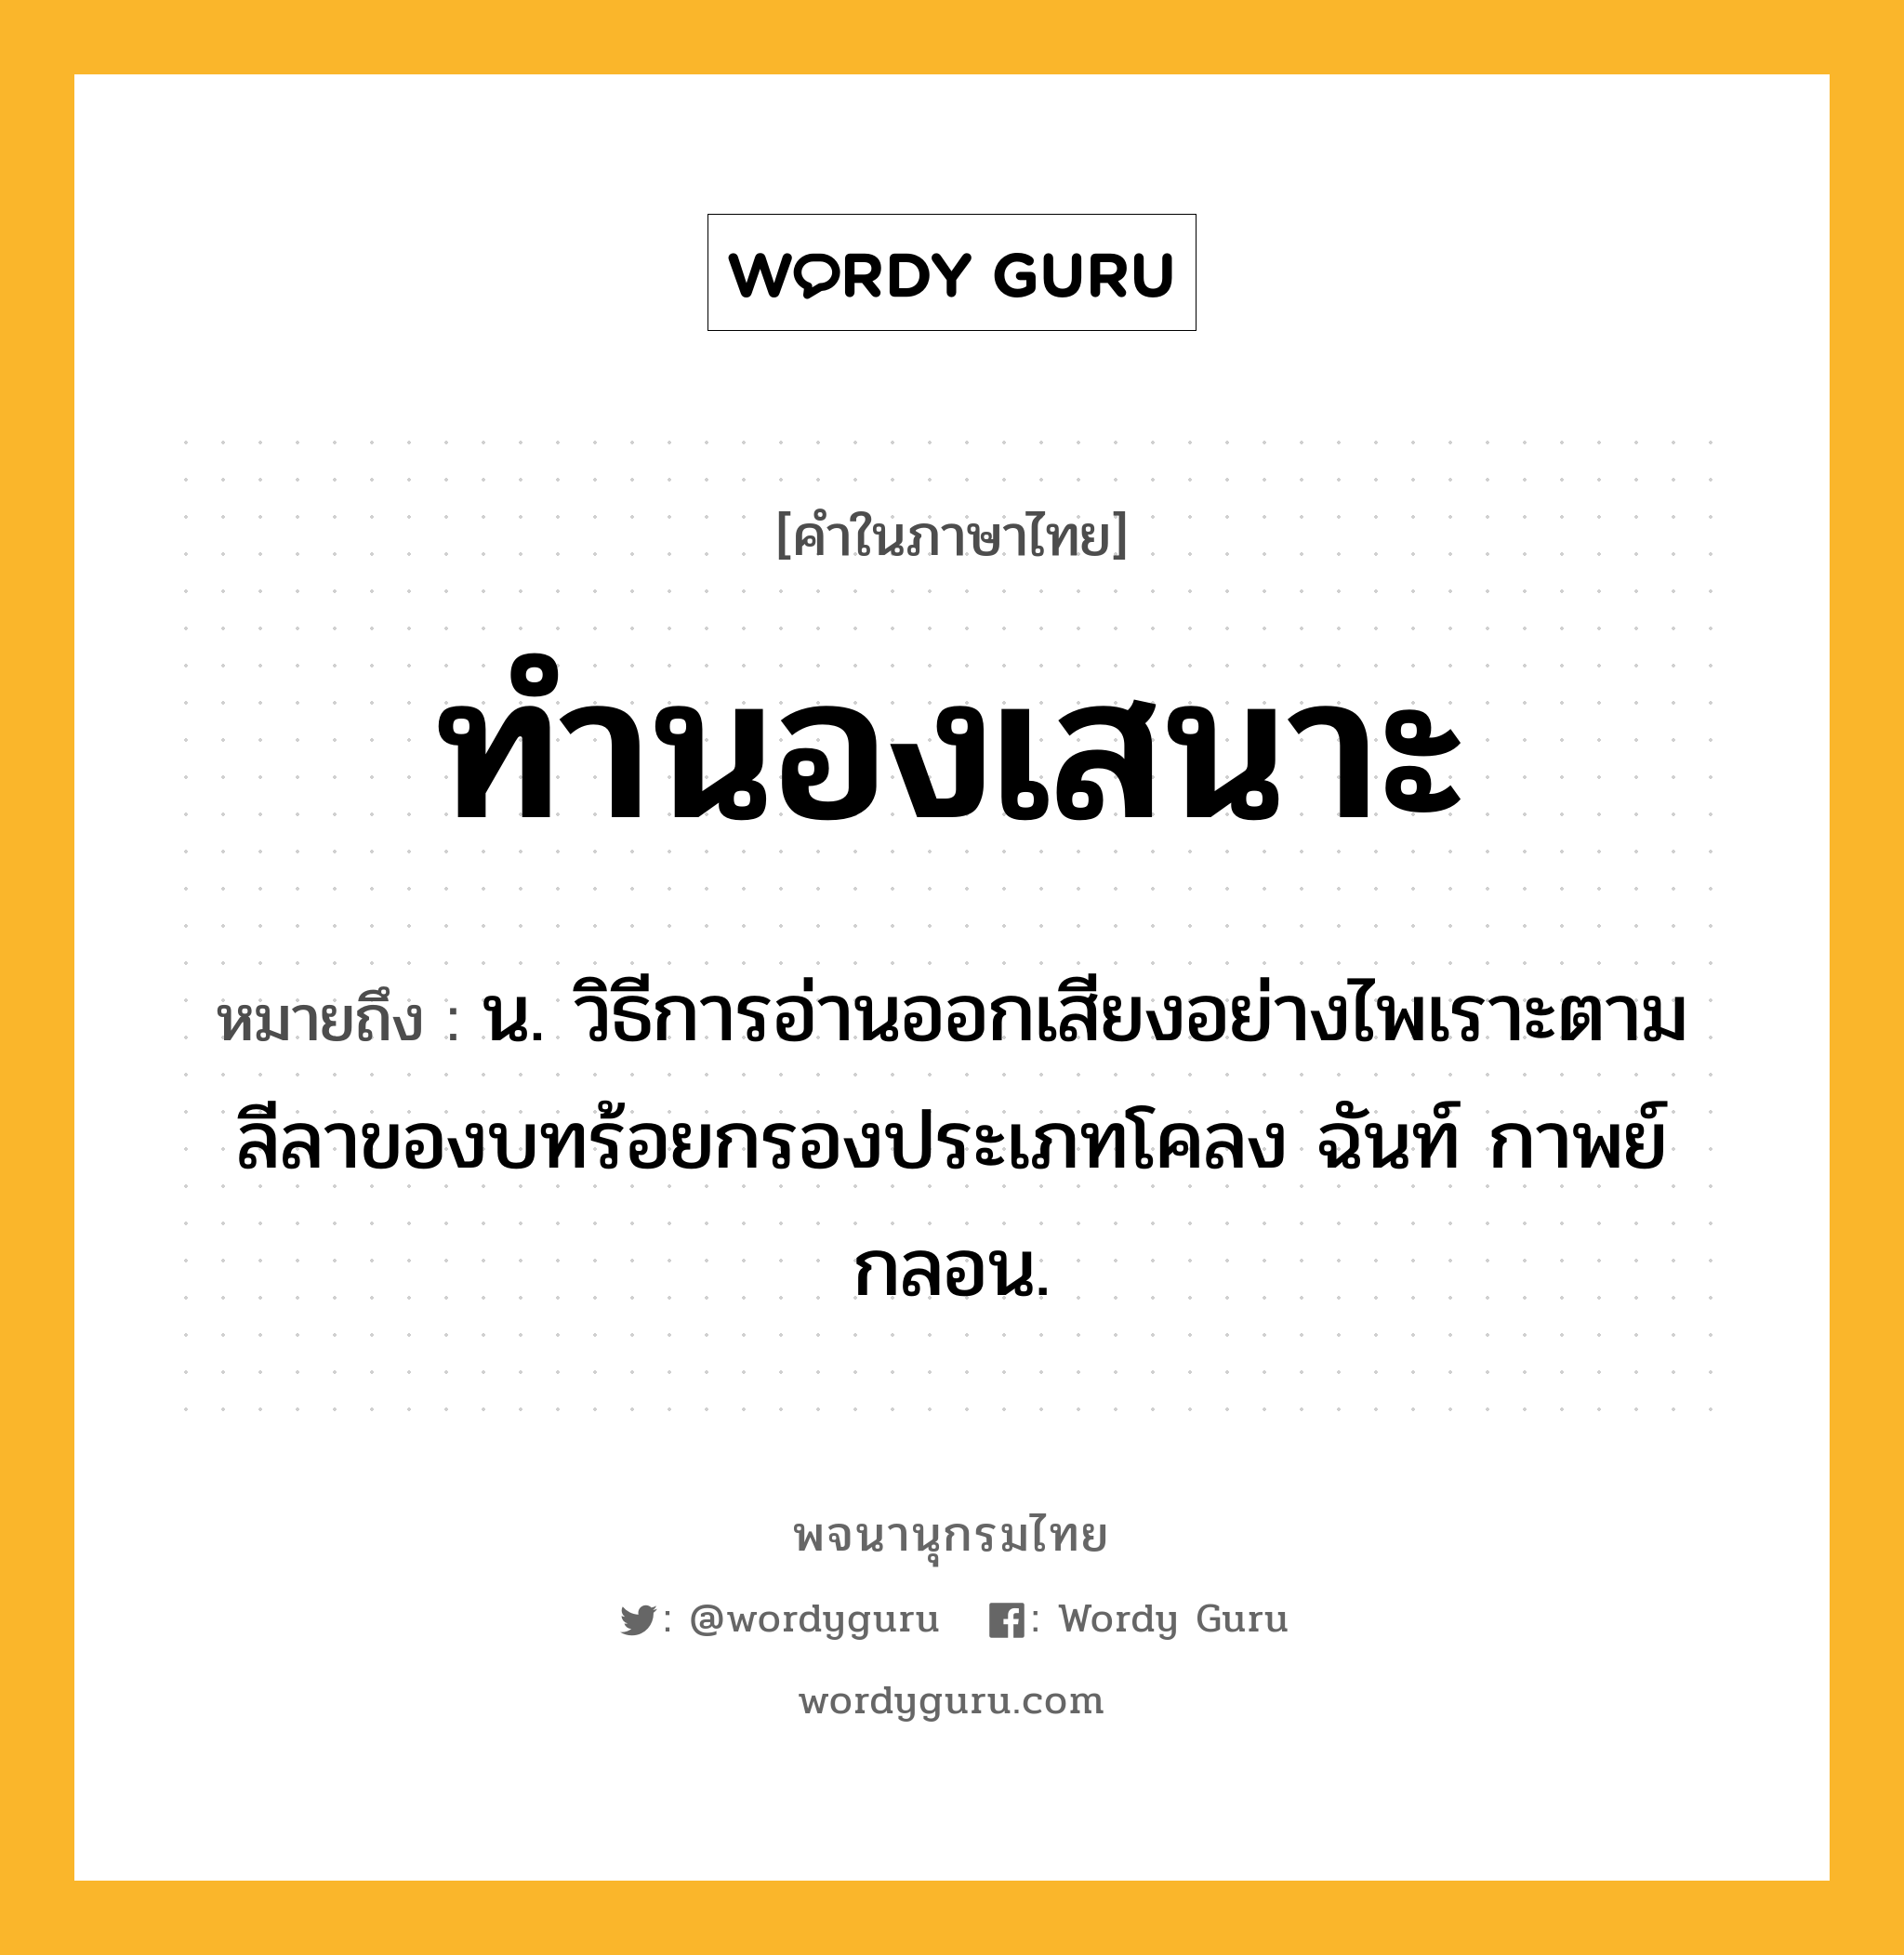 ทำนองเสนาะ หมายถึงอะไร?, คำในภาษาไทย ทำนองเสนาะ หมายถึง น. วิธีการอ่านออกเสียงอย่างไพเราะตามลีลาของบทร้อยกรองประเภทโคลง ฉันท์ กาพย์ กลอน.